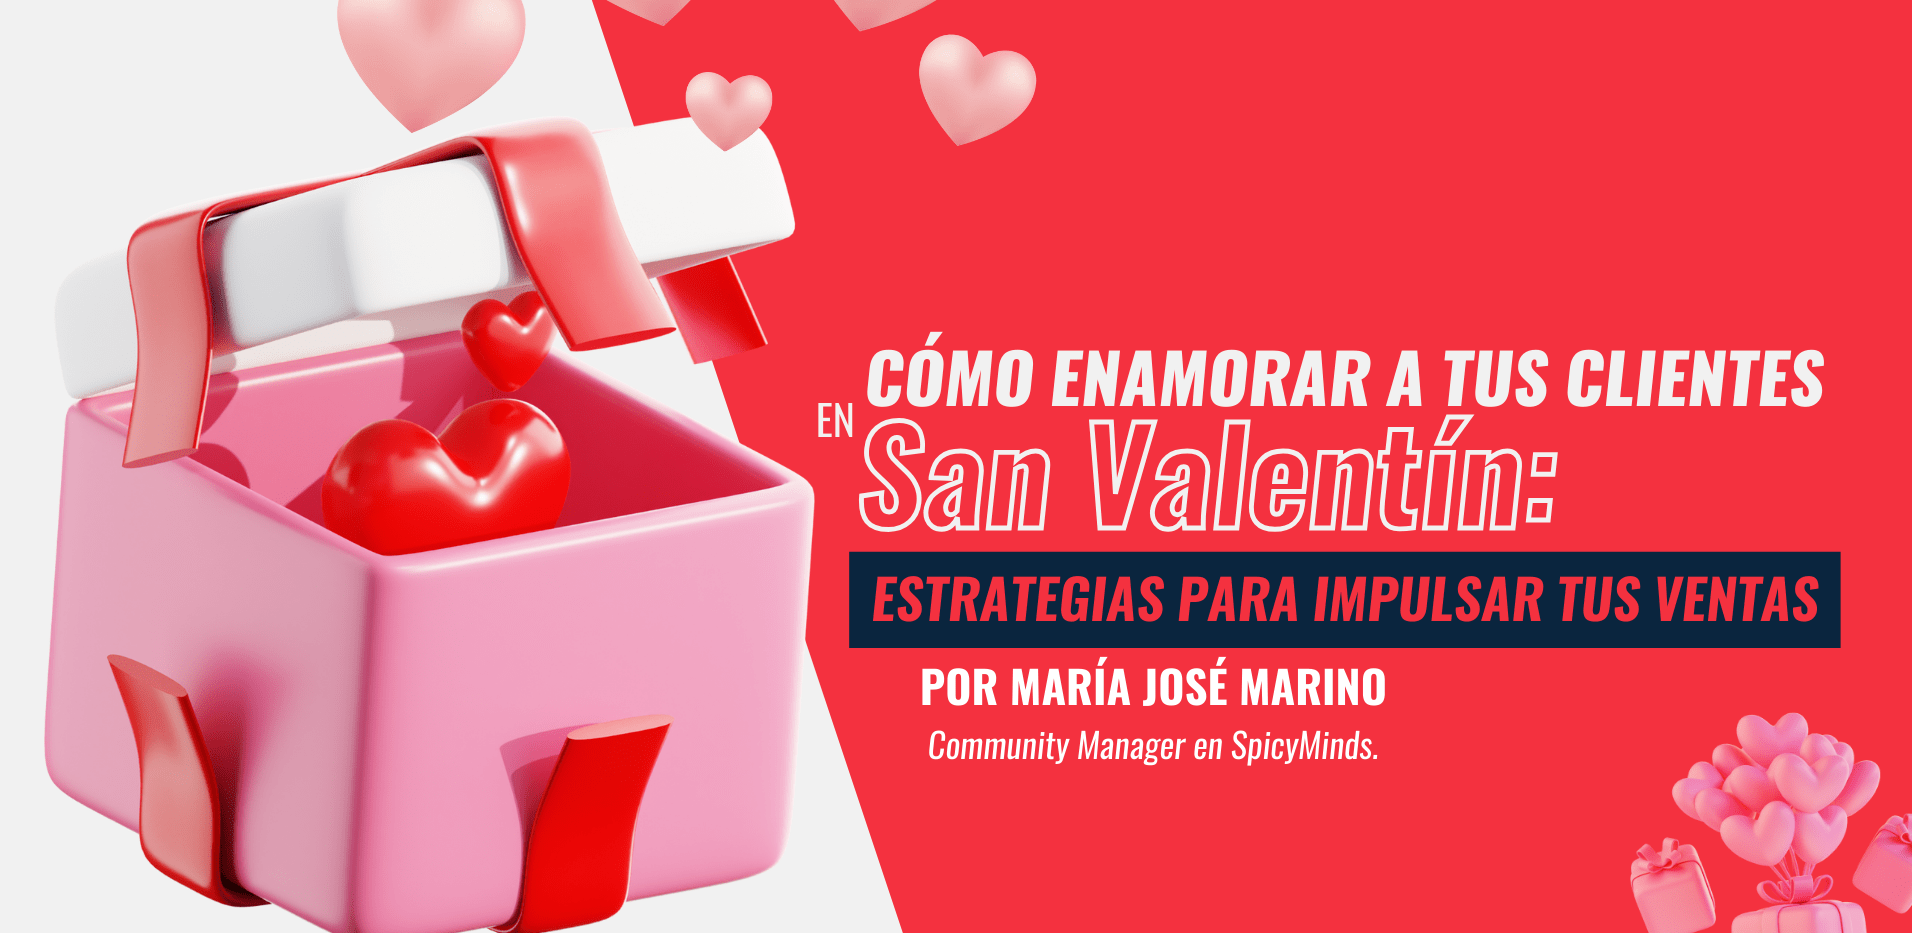 Imagen: Cómo enamorar a tus clientes en San Valentín: Estrategias para impulsar tus ventas